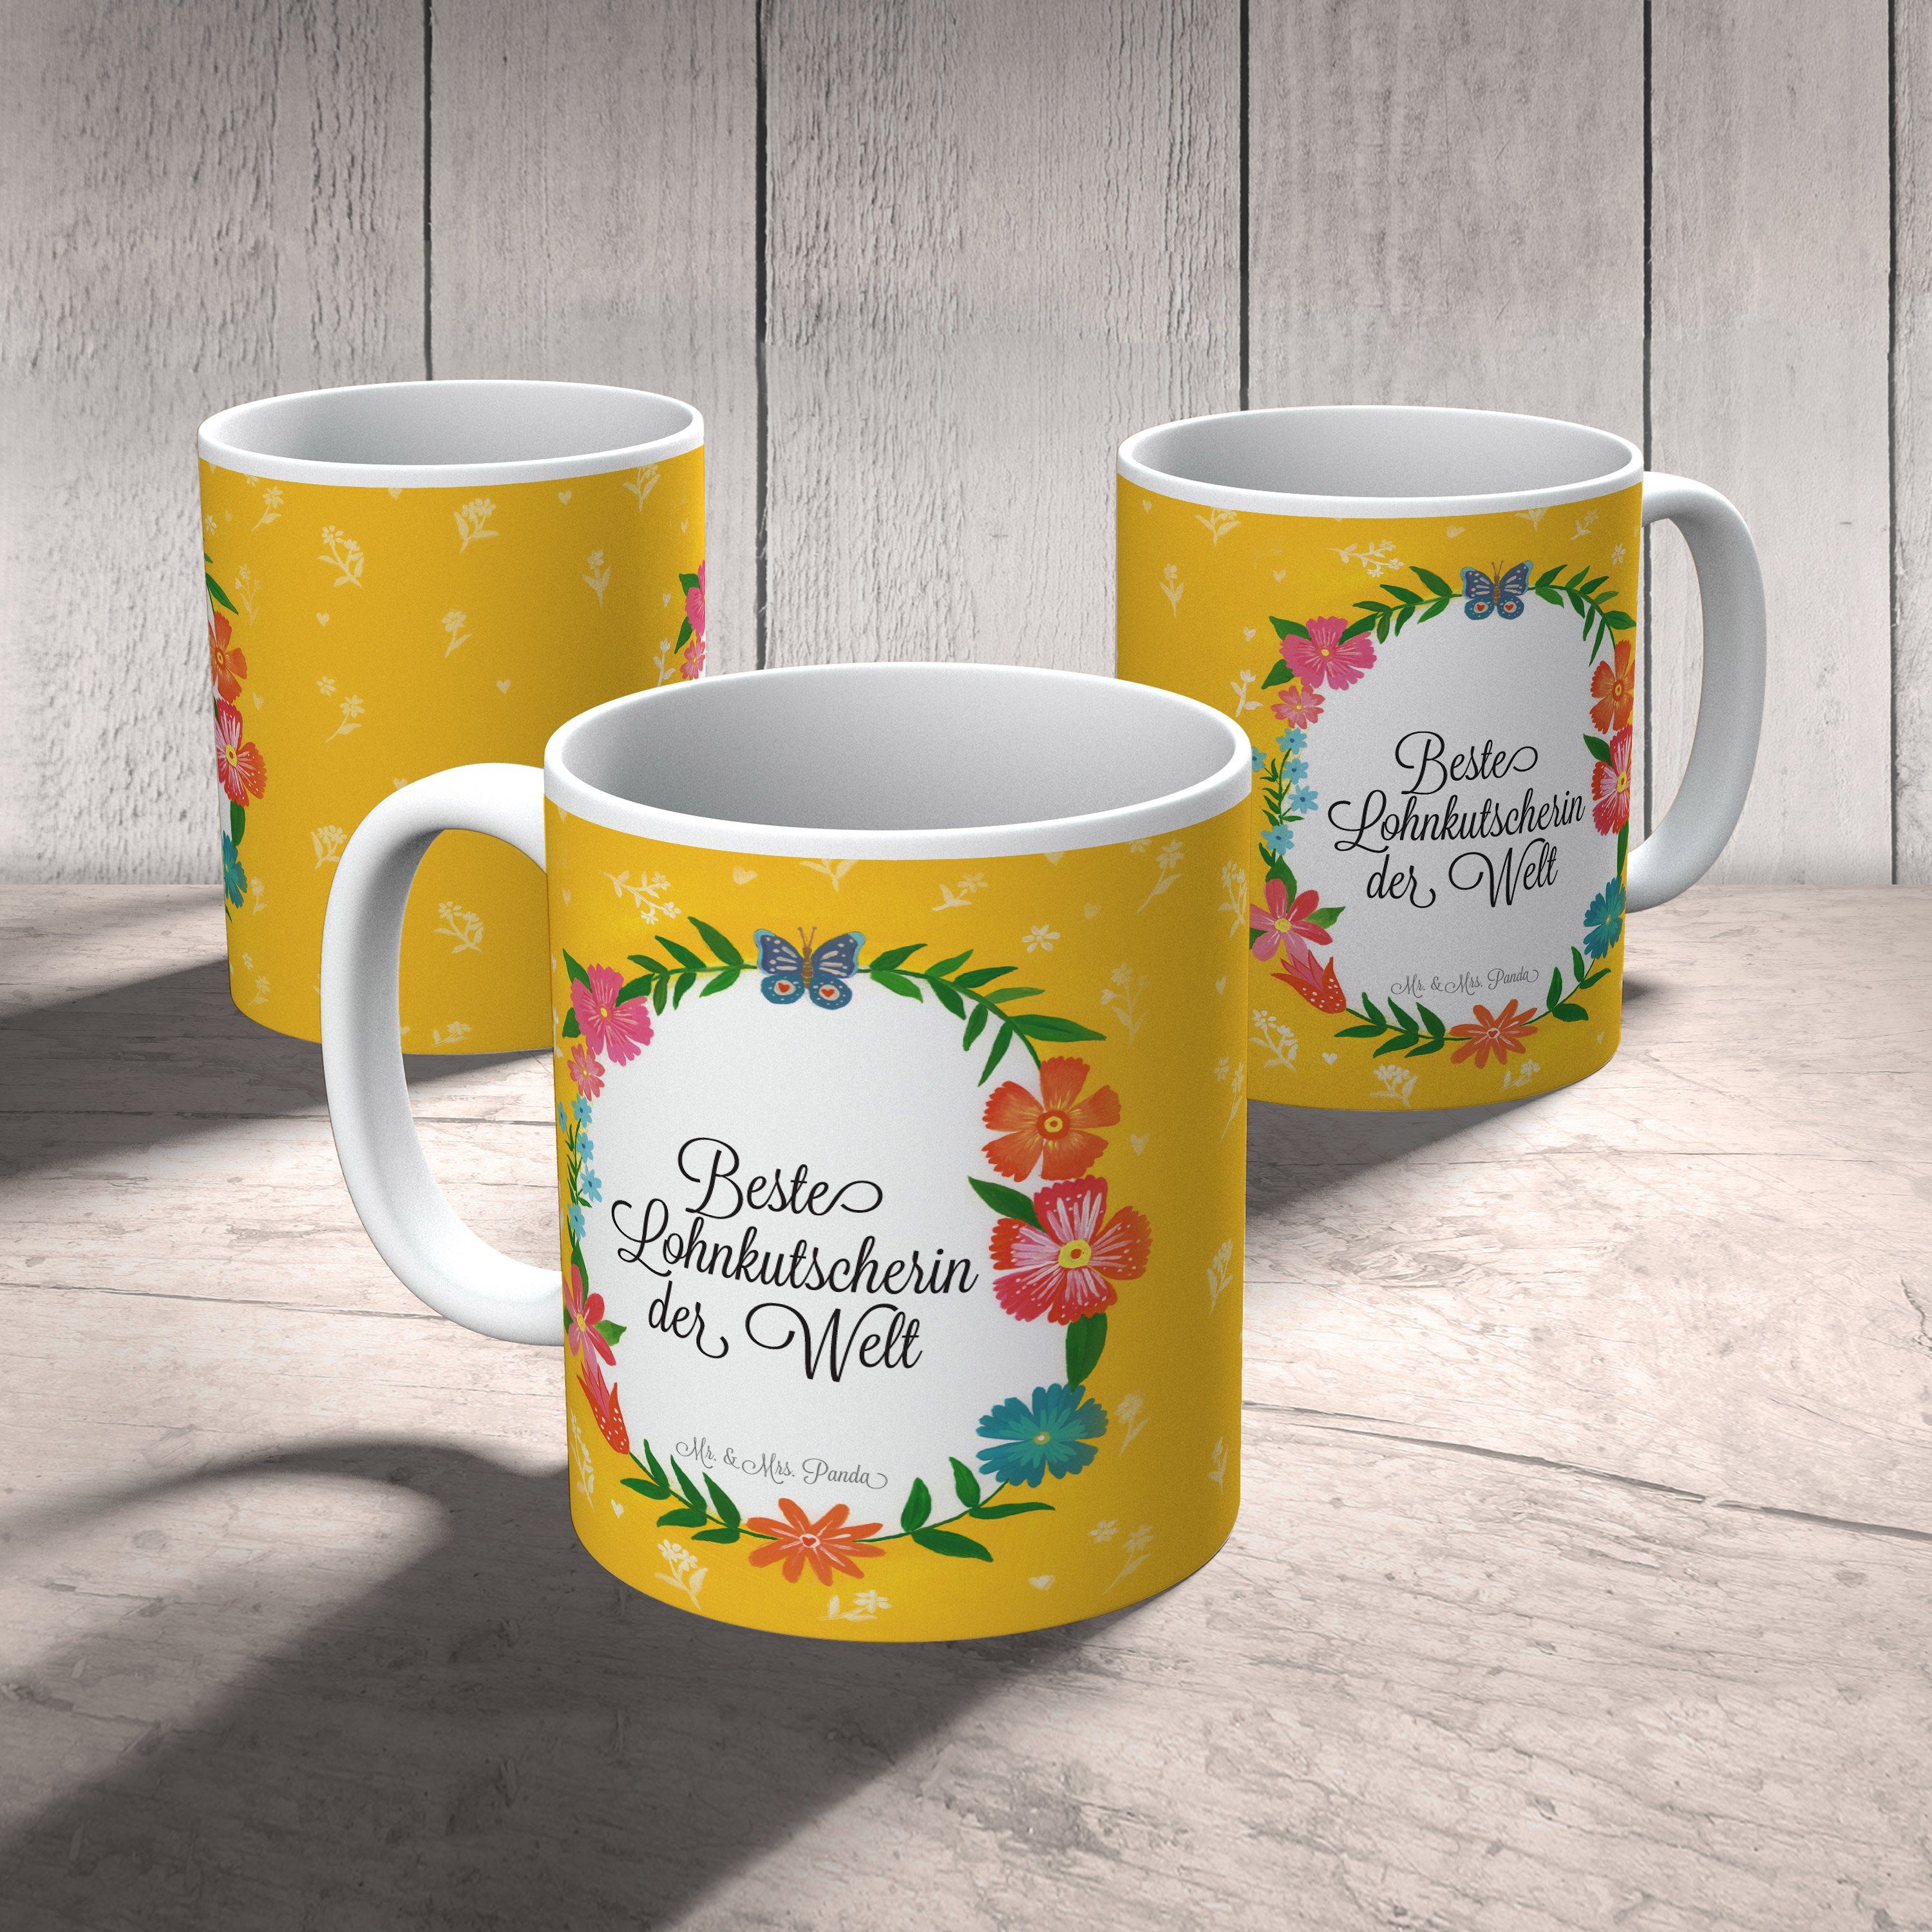 Mr. & Mrs. Porzellantasse, Tasse Geschenk Keramik Tasse, Tasse, - Panda Lohnkutscherin Tee, Geschenk